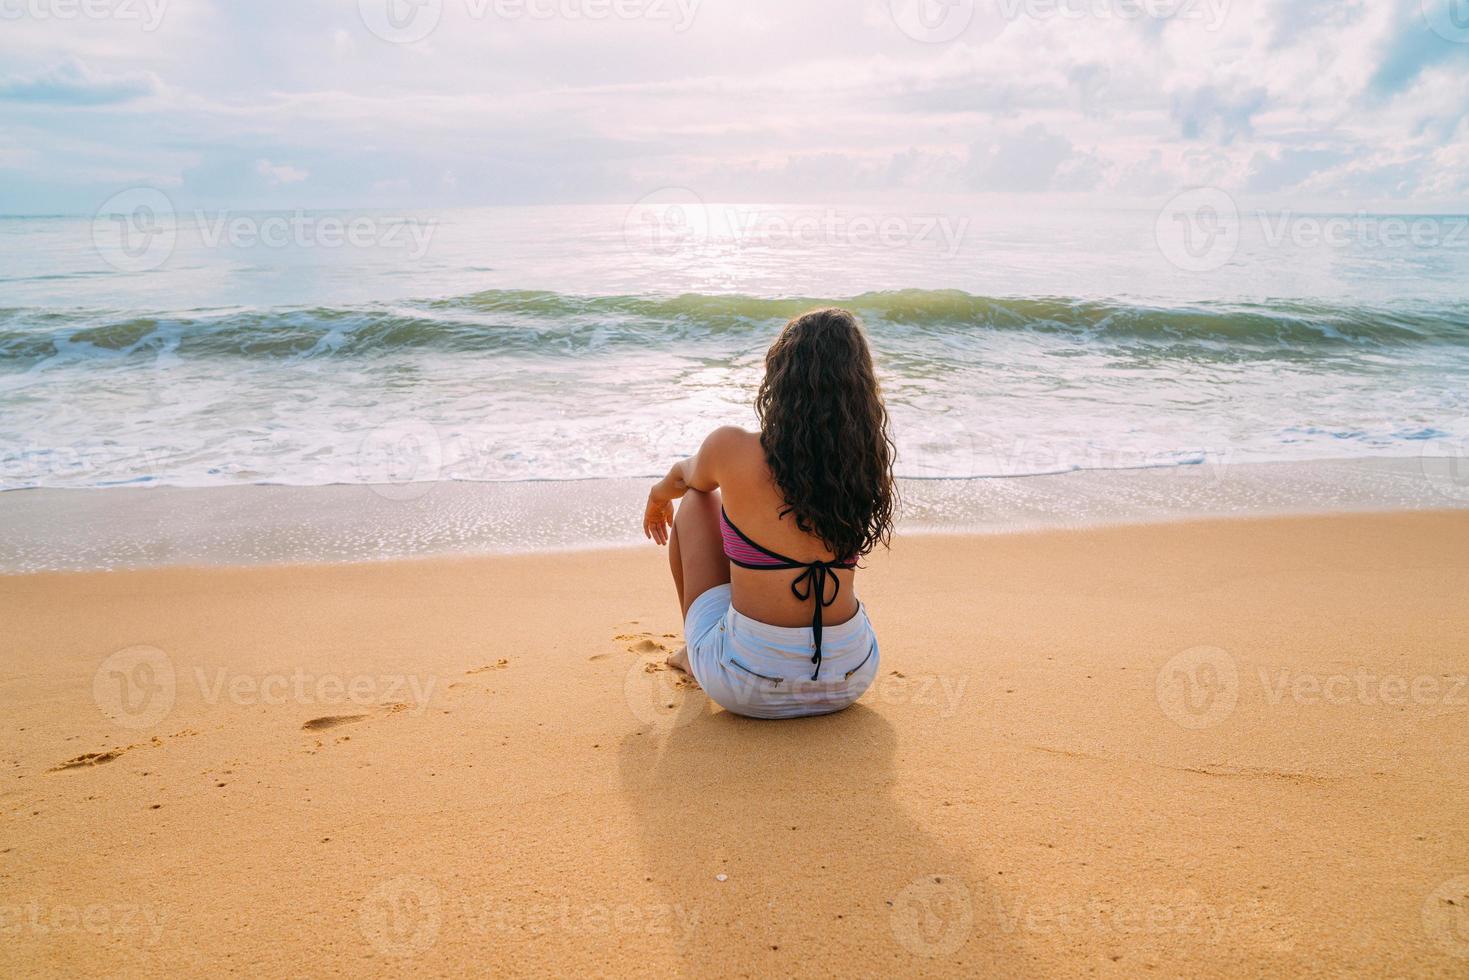 silhouette de jeune femme sur la plage. femme latino-américaine assise sur le sable de la plage regardant le ciel par une belle journée d'été photo